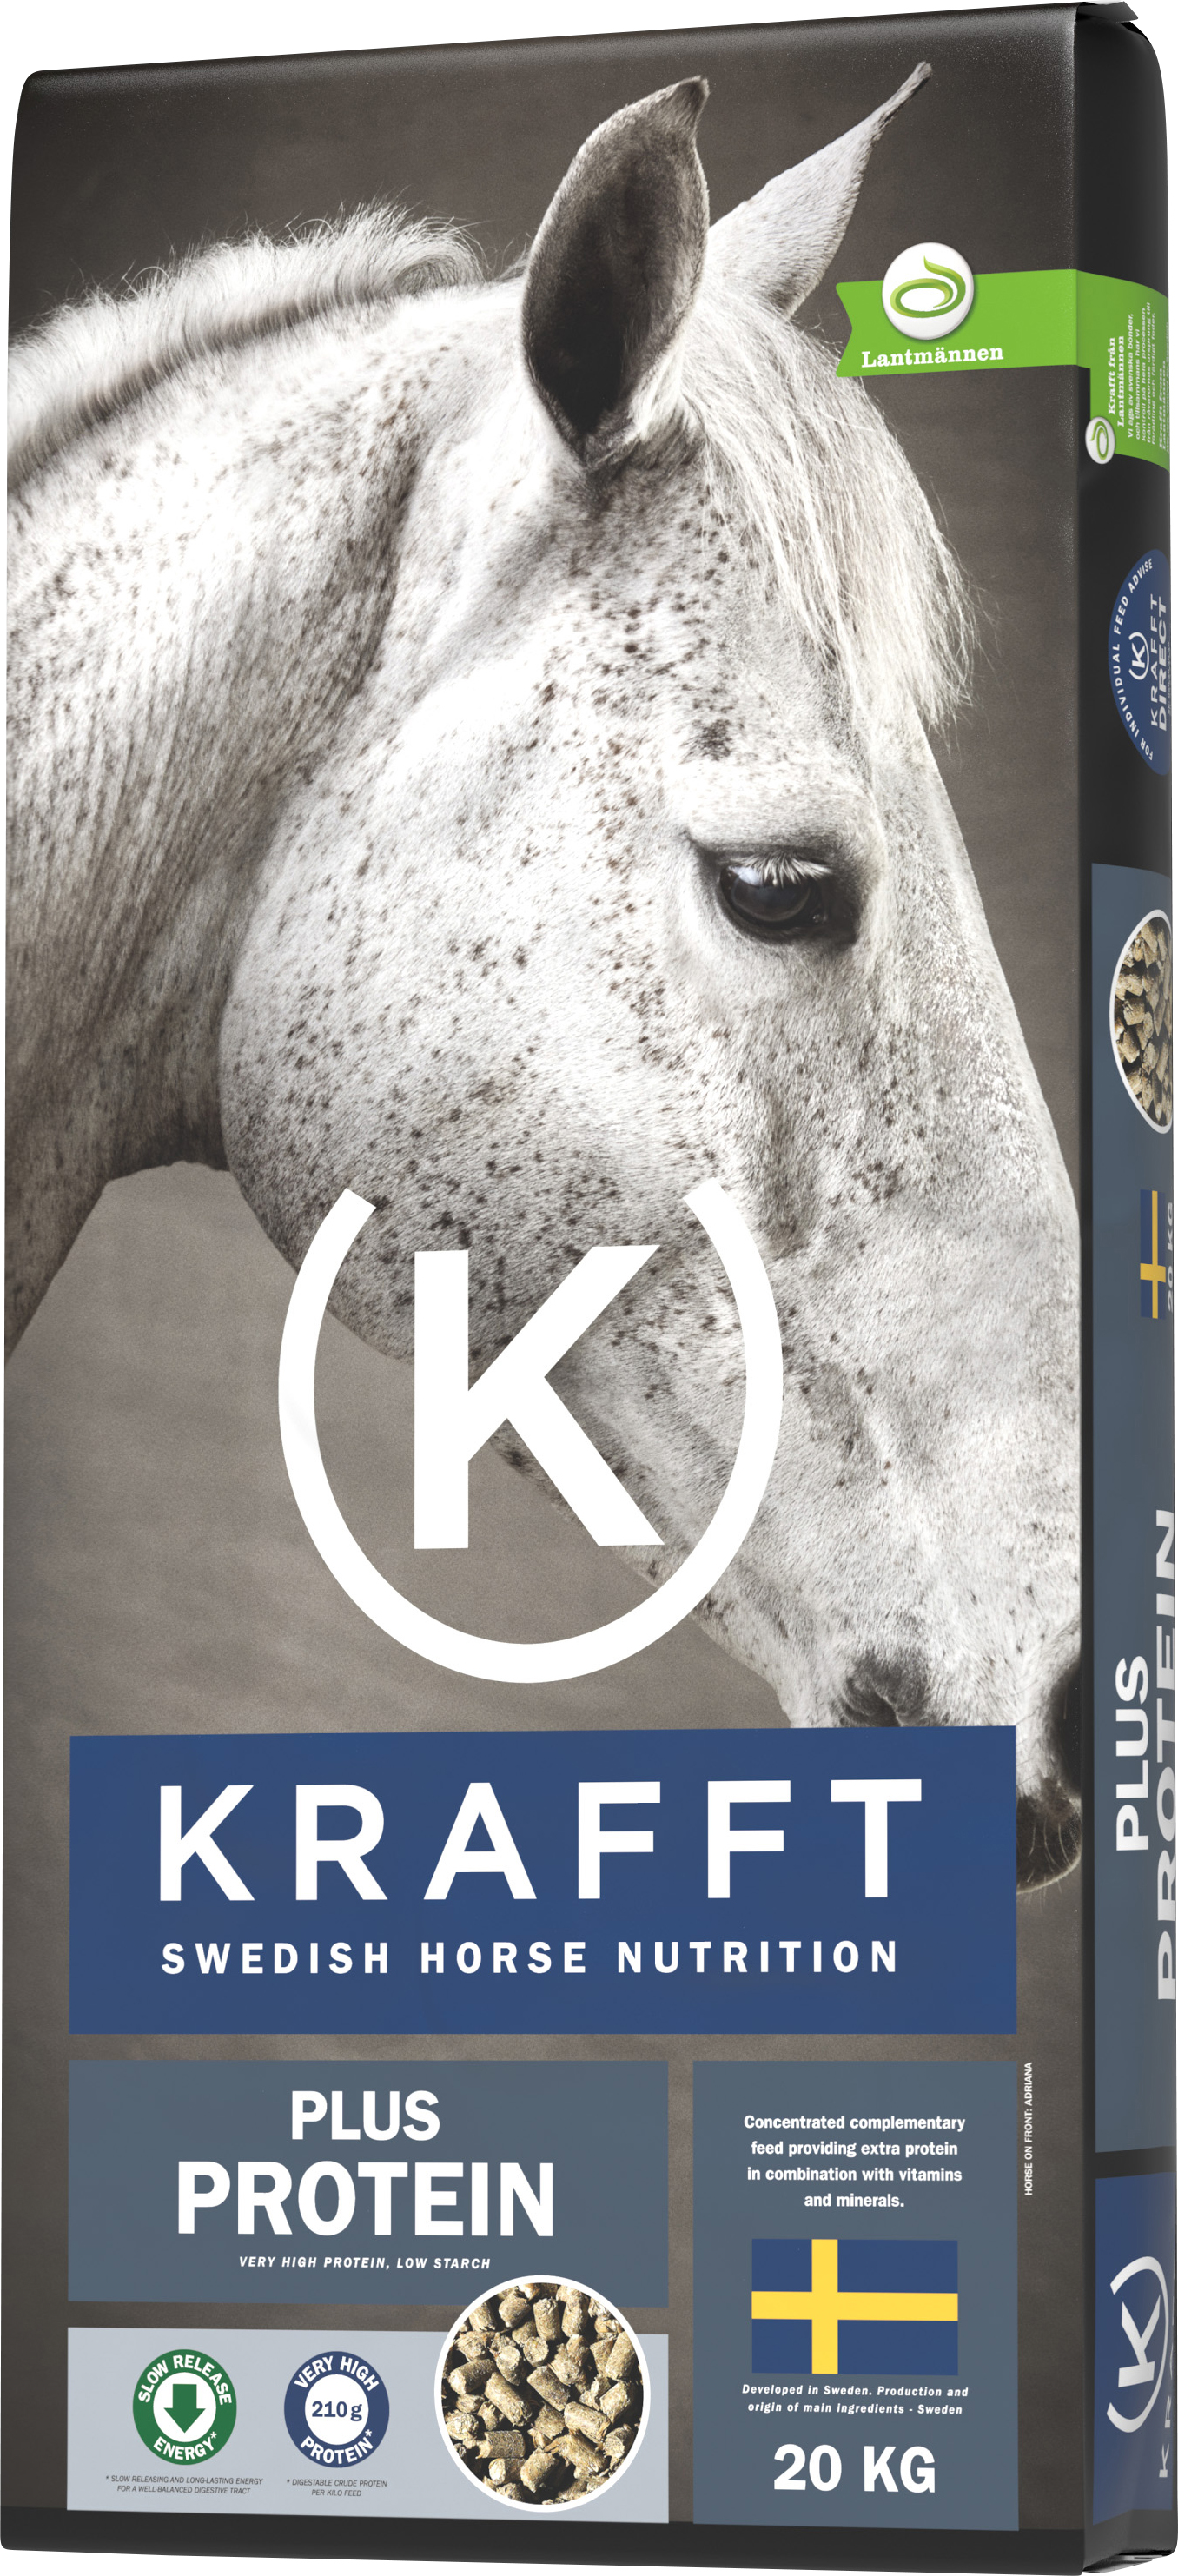 Hästfoder Krafft Plus Protein, 20 kg